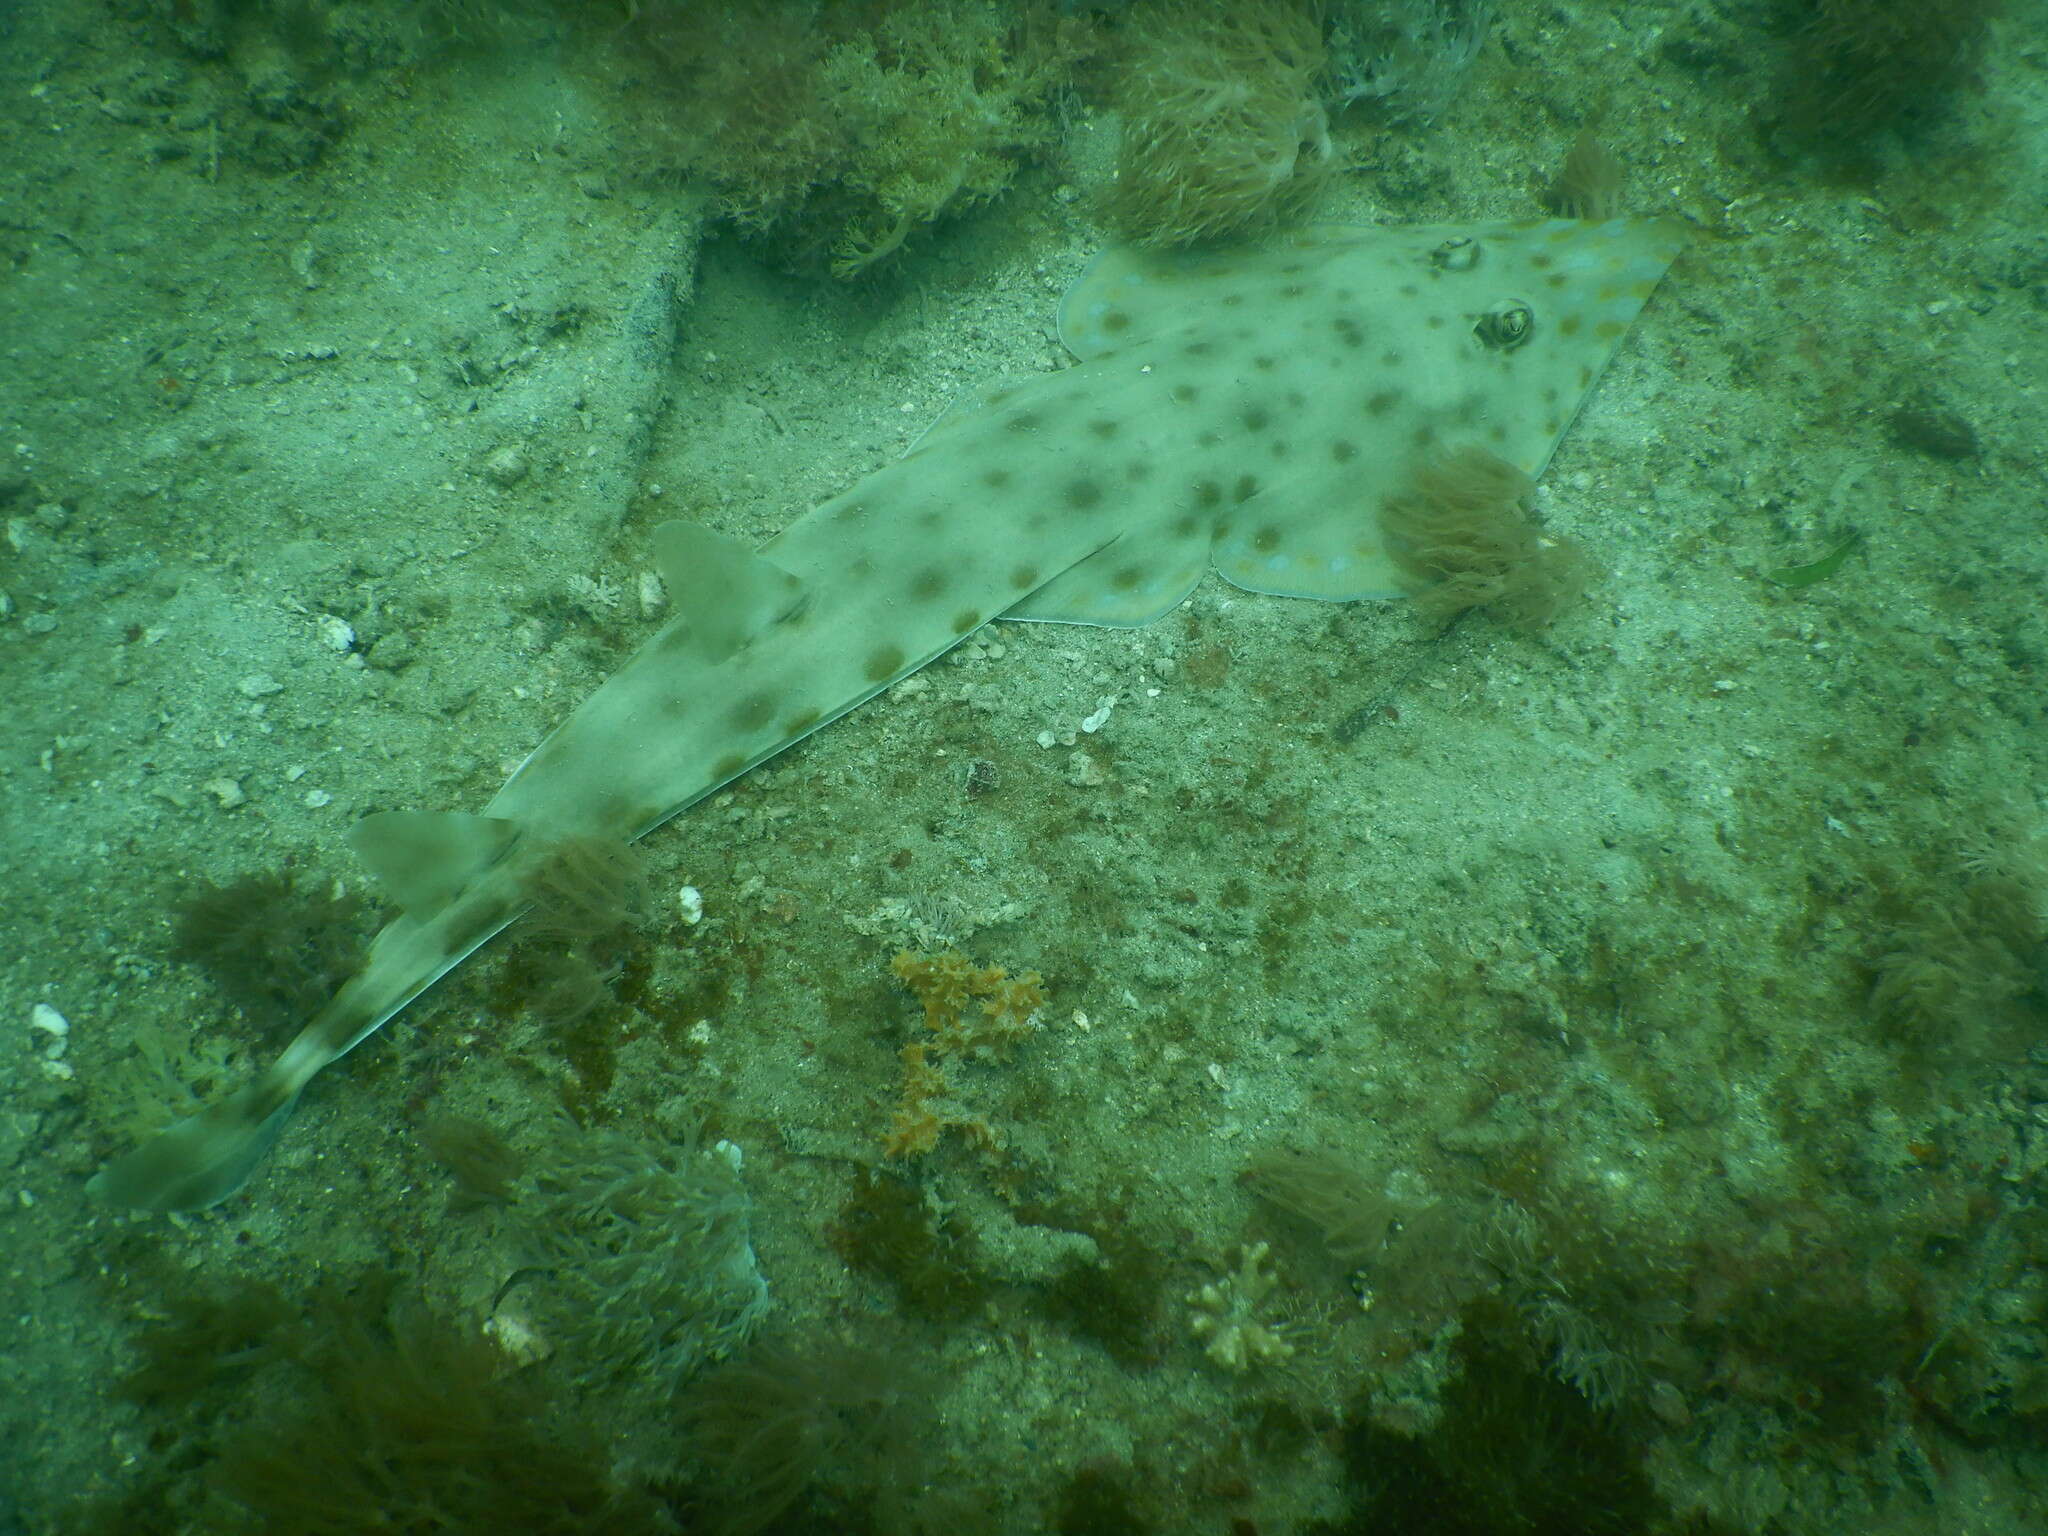 Image of Zanzibar guitarfish